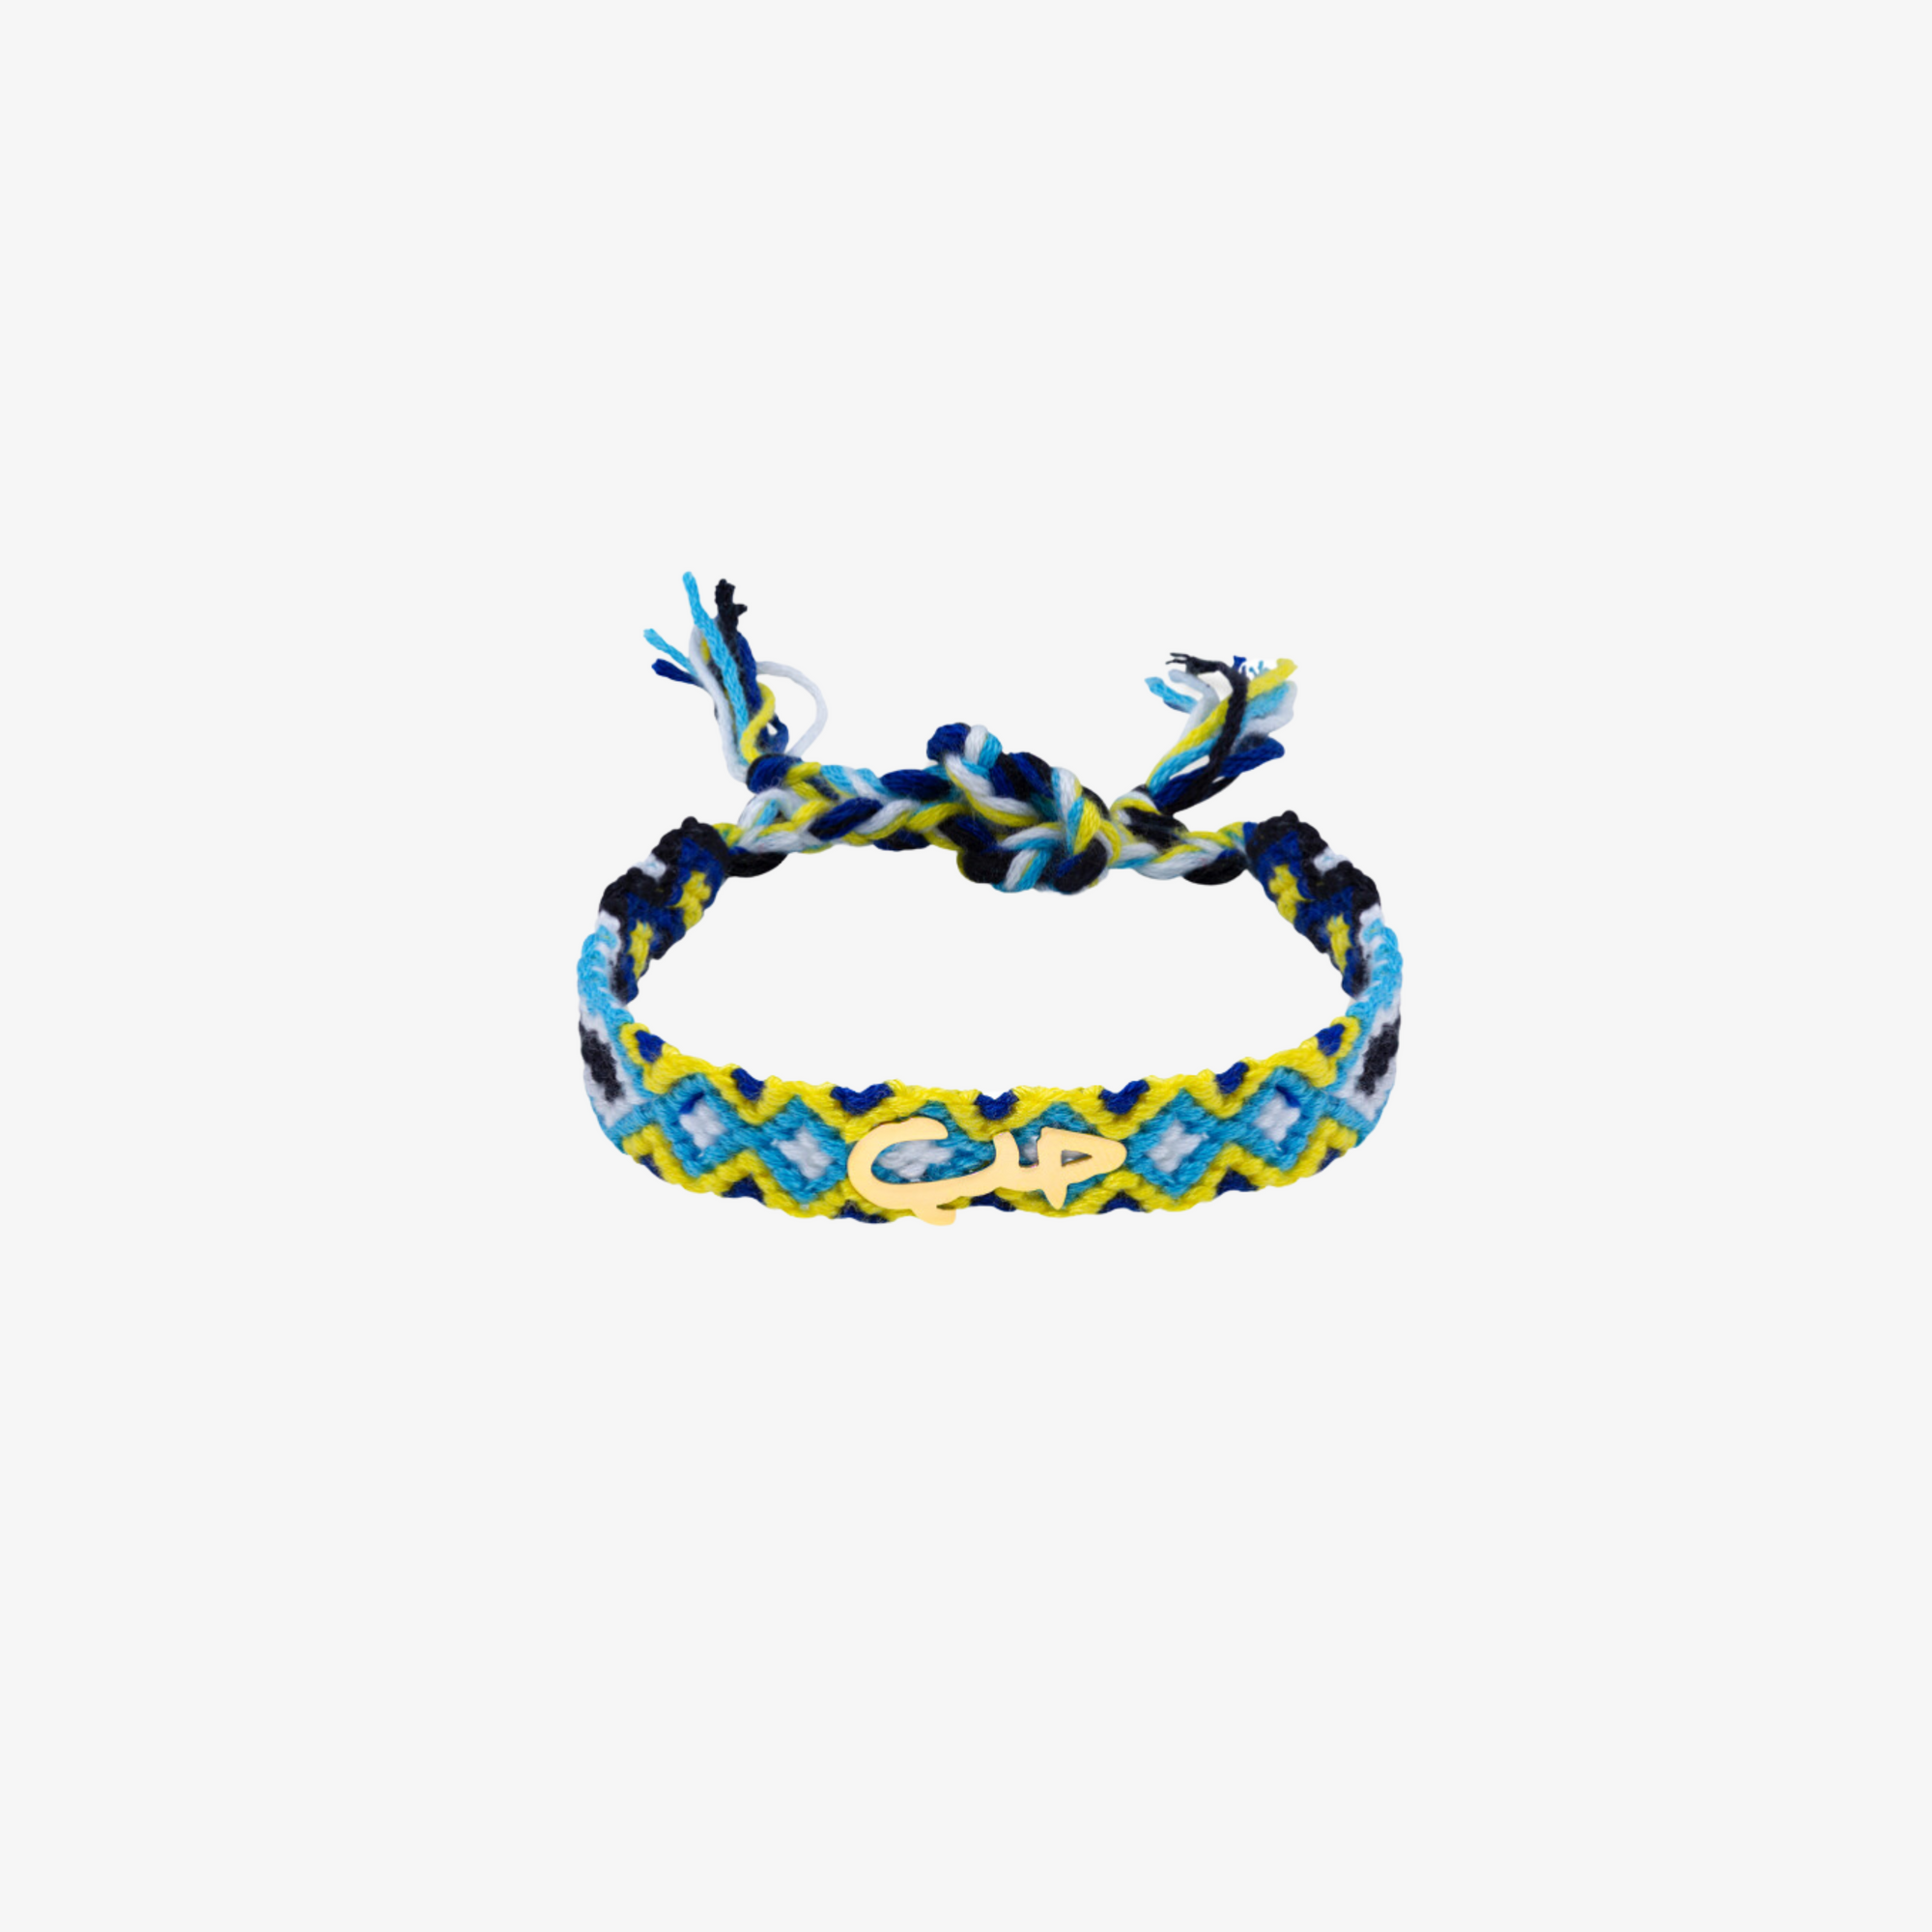 HOBB - 18K Small "Love" Fabric Bracelet